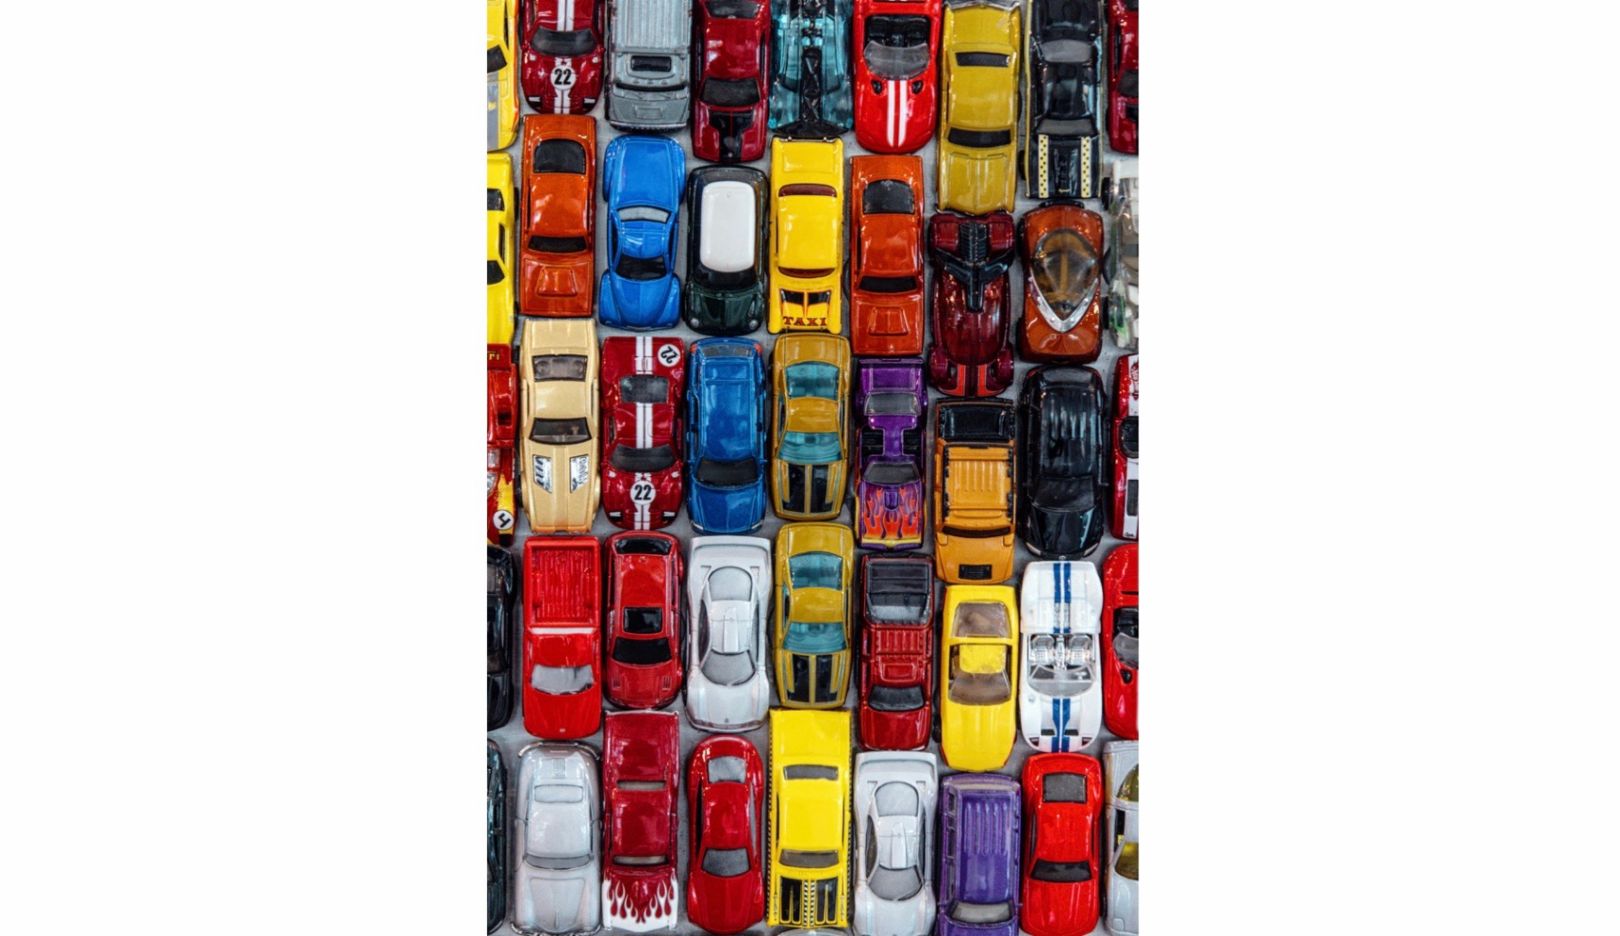 Arte em espaços públicos: Para decorar um estacionamento em Stockton, Califórnia, Huether criou uma colagem de 30.000 carrinhos de brinquedo.